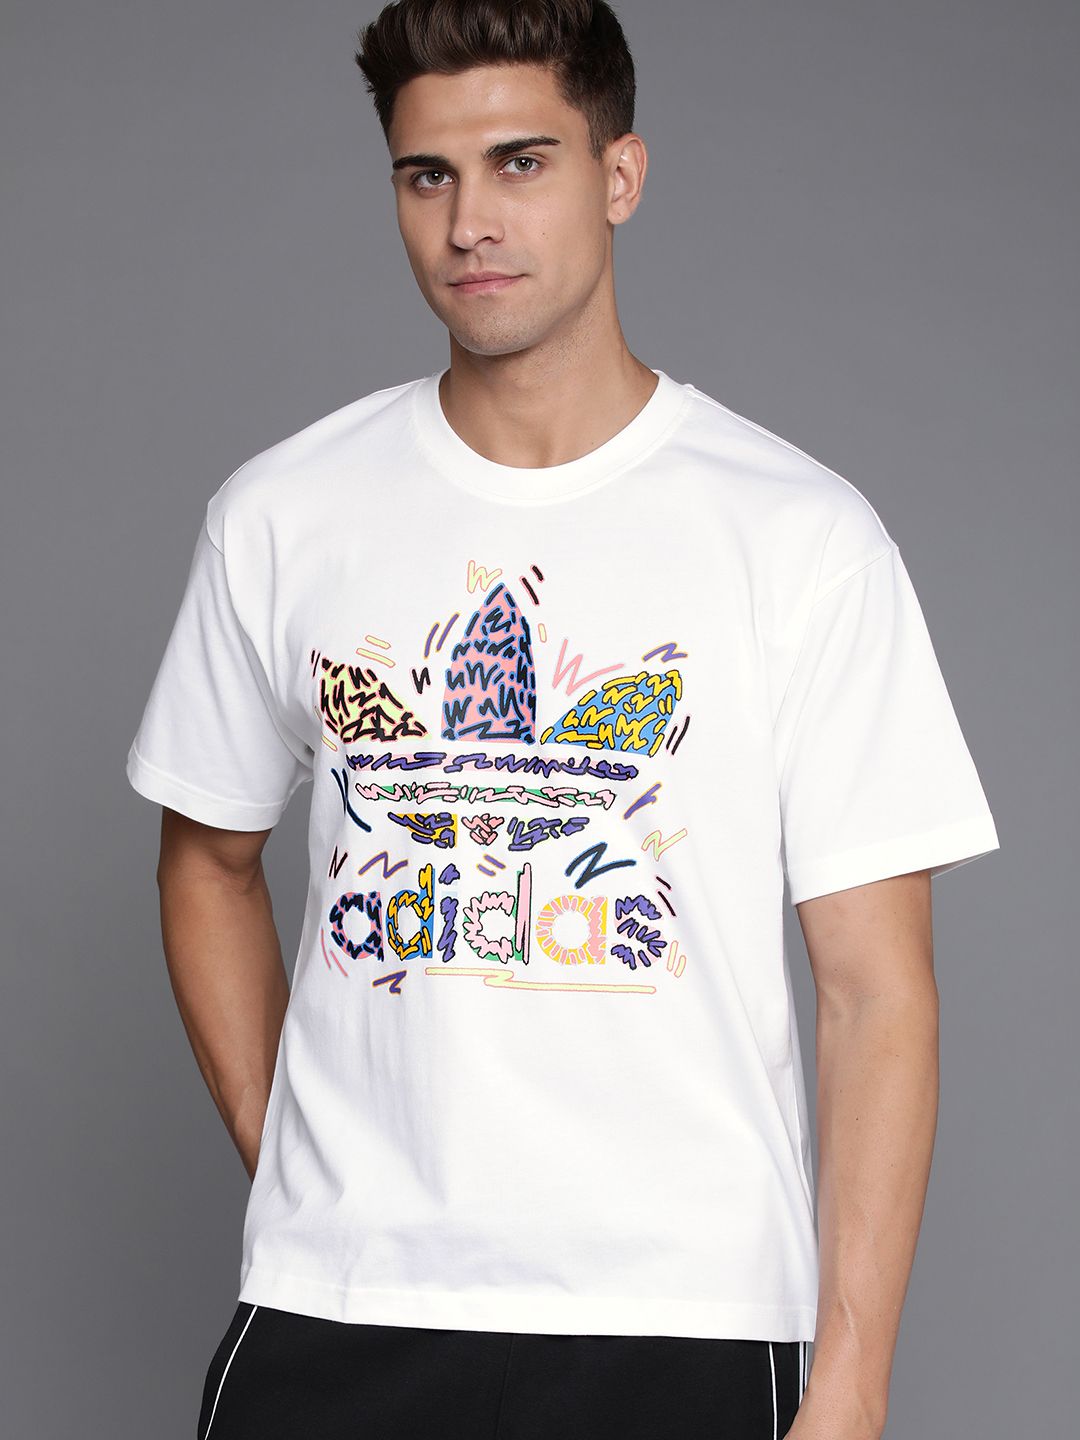 ADIDAS Originals Unisex White & Blue Love Unites Trefoil T-shirt Price in India